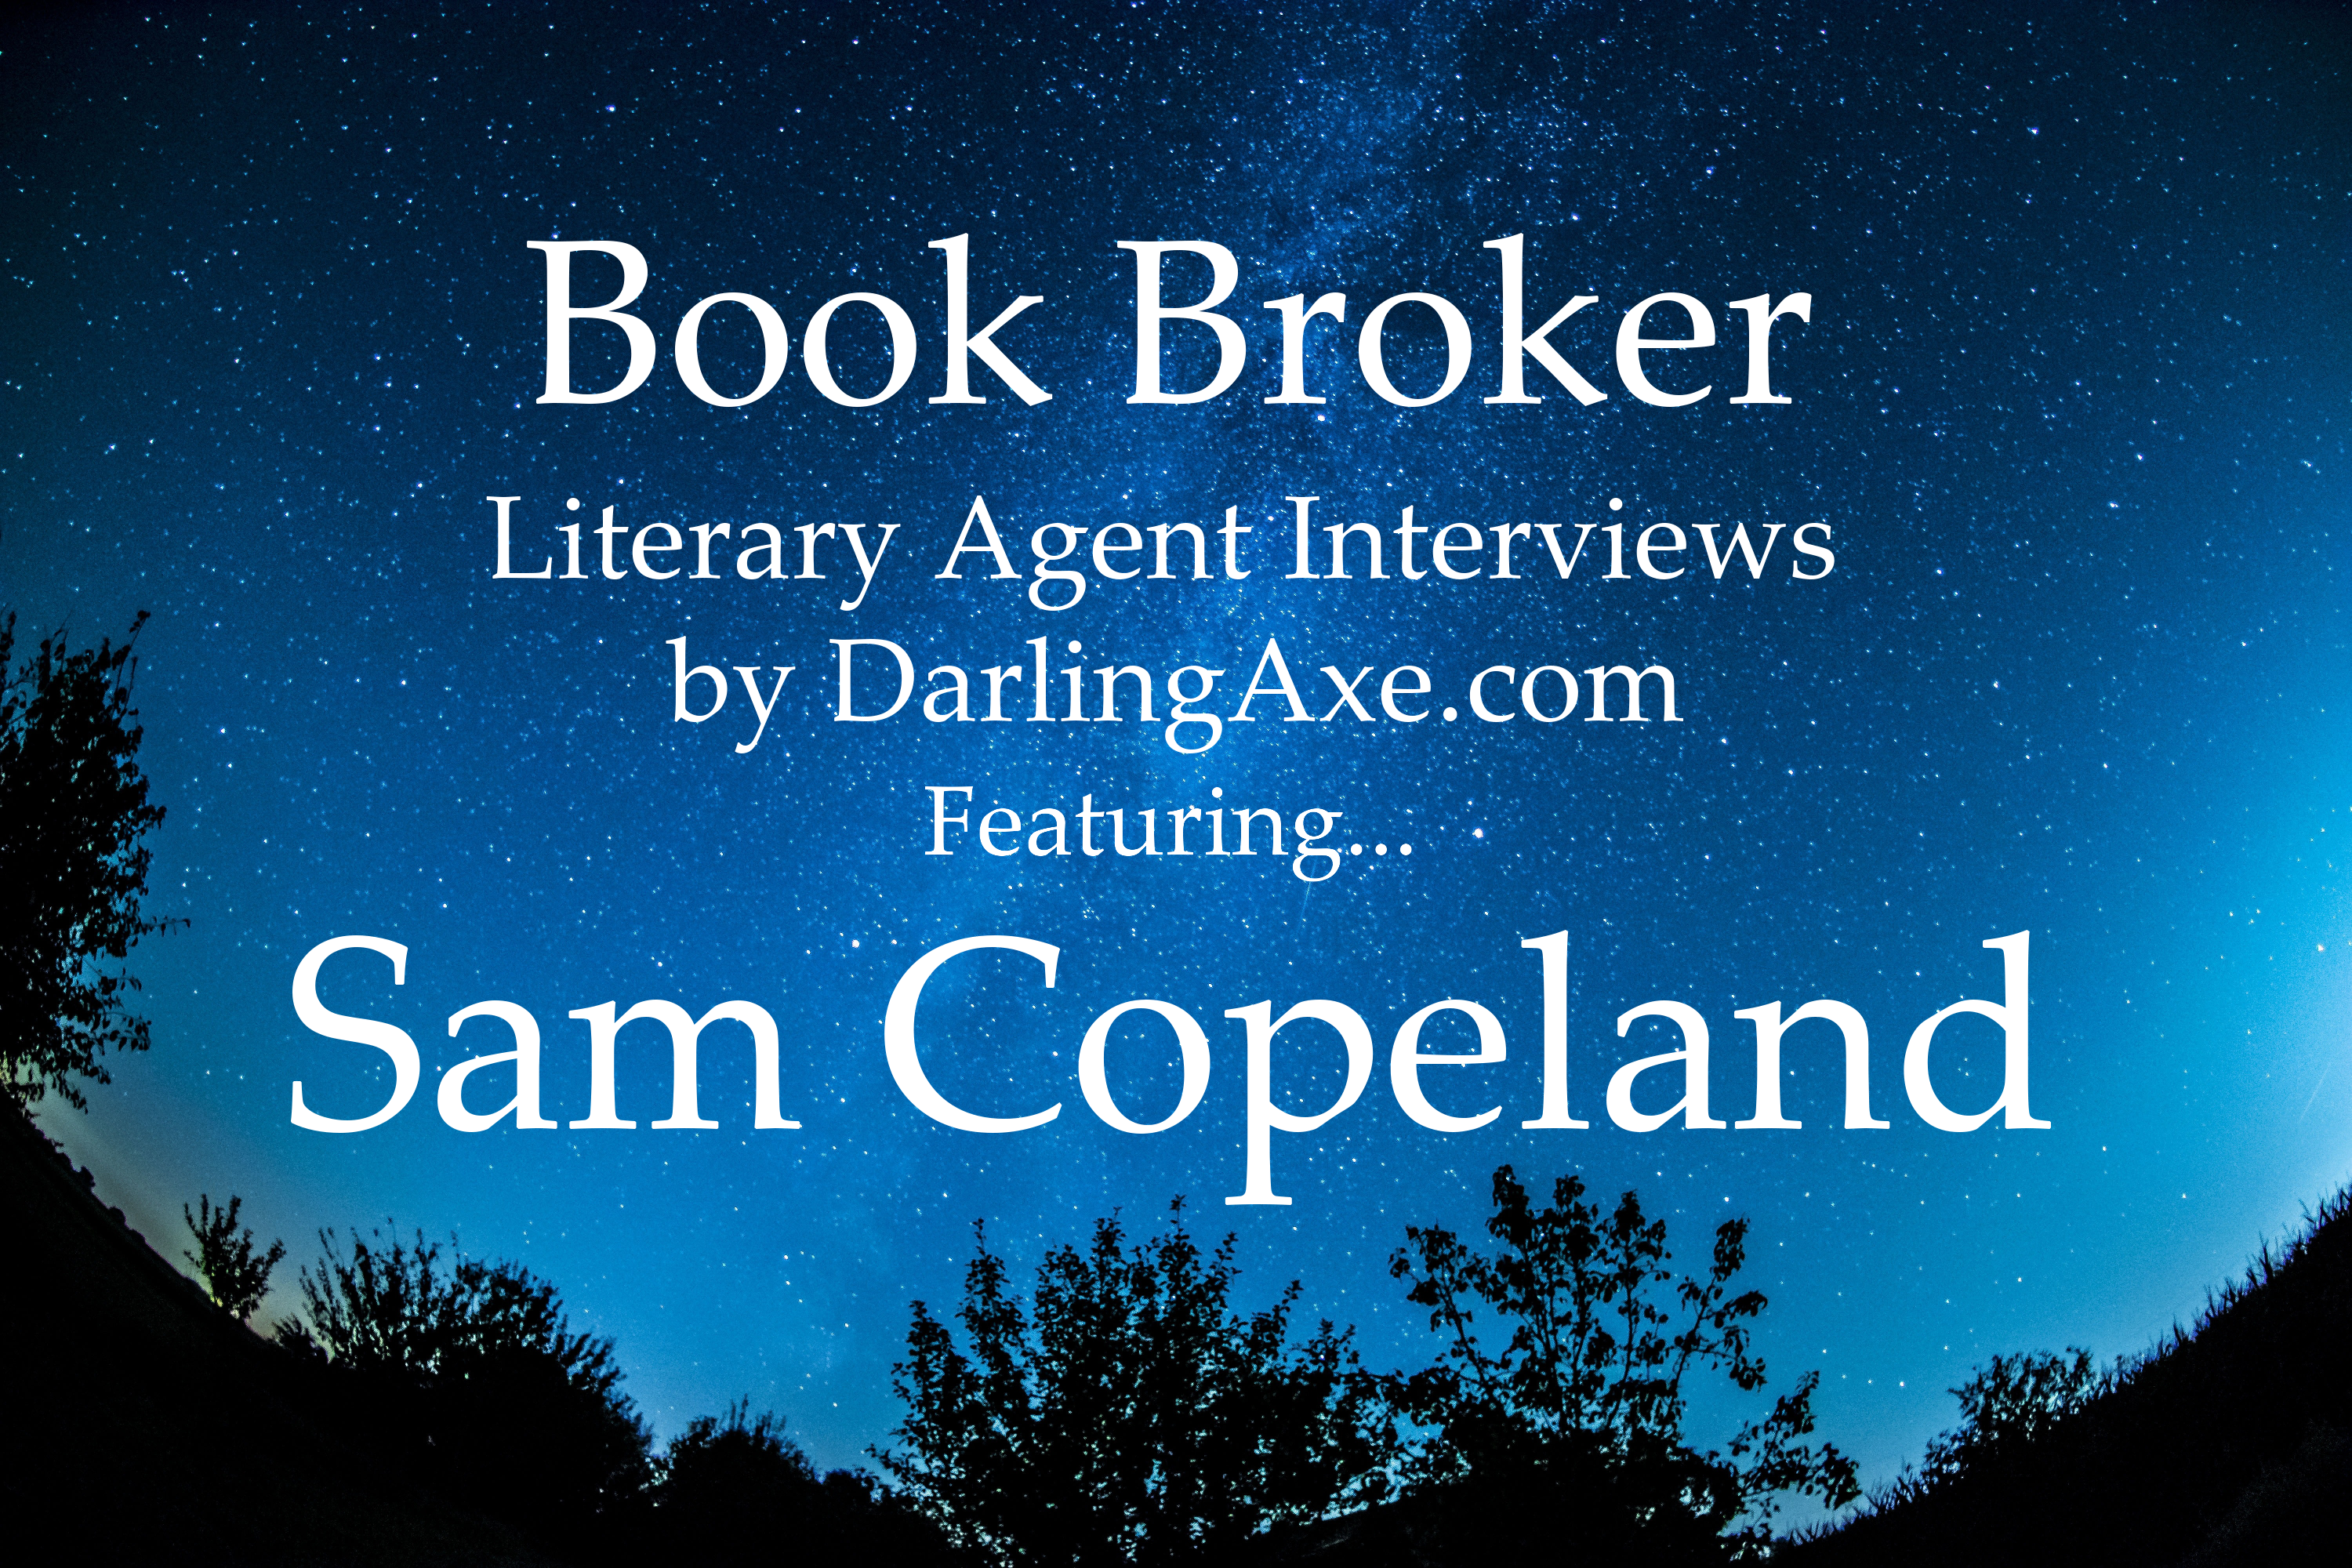 Book Broker—an interview with Sam Copeland